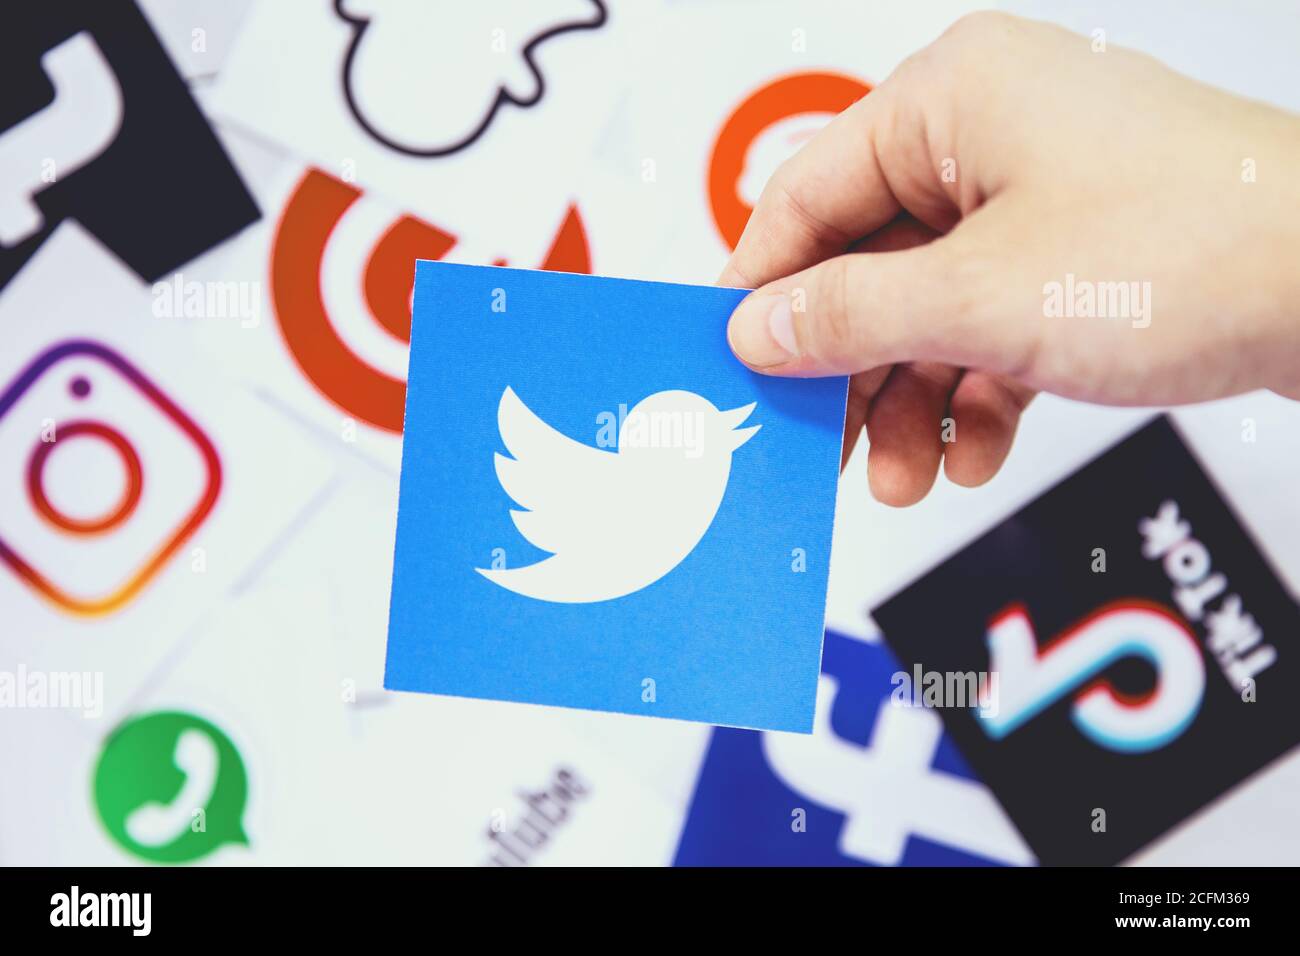 WROCLAW, POLOGNE - 29 août 2020 : la main tient le logo Twitter au-dessus d'autres symboles des médias sociaux. Twitter est un microblogging américain et un réseau social Banque D'Images